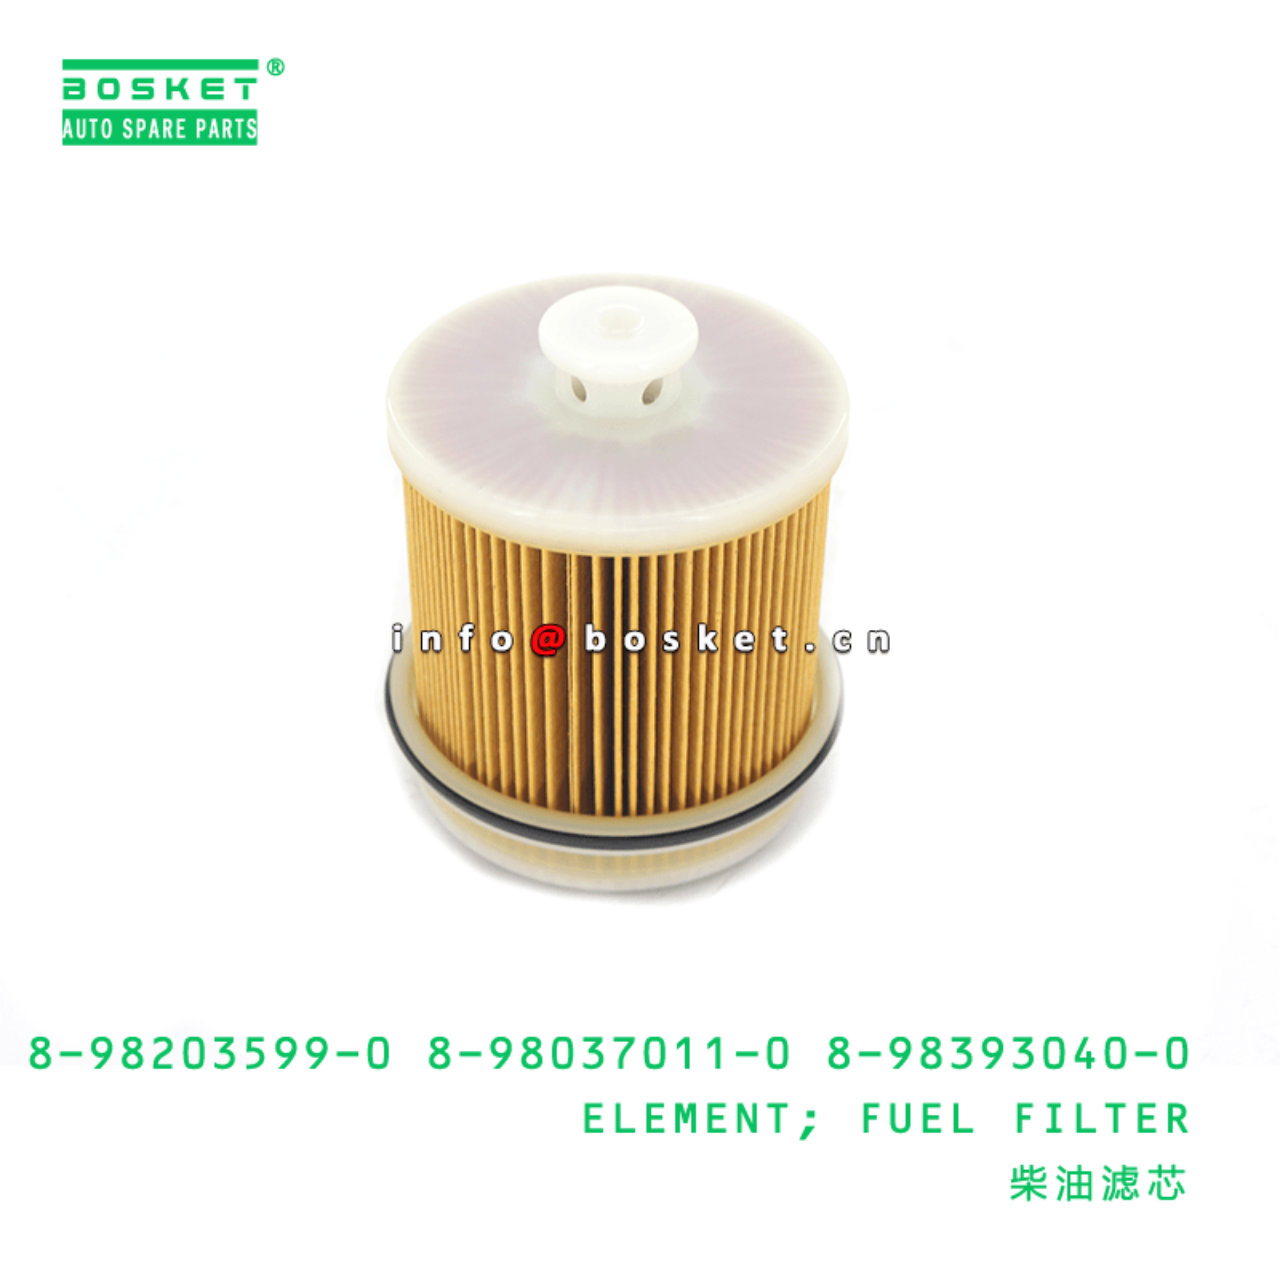 Isuzu Fuel Filter 98203599 Genuine 